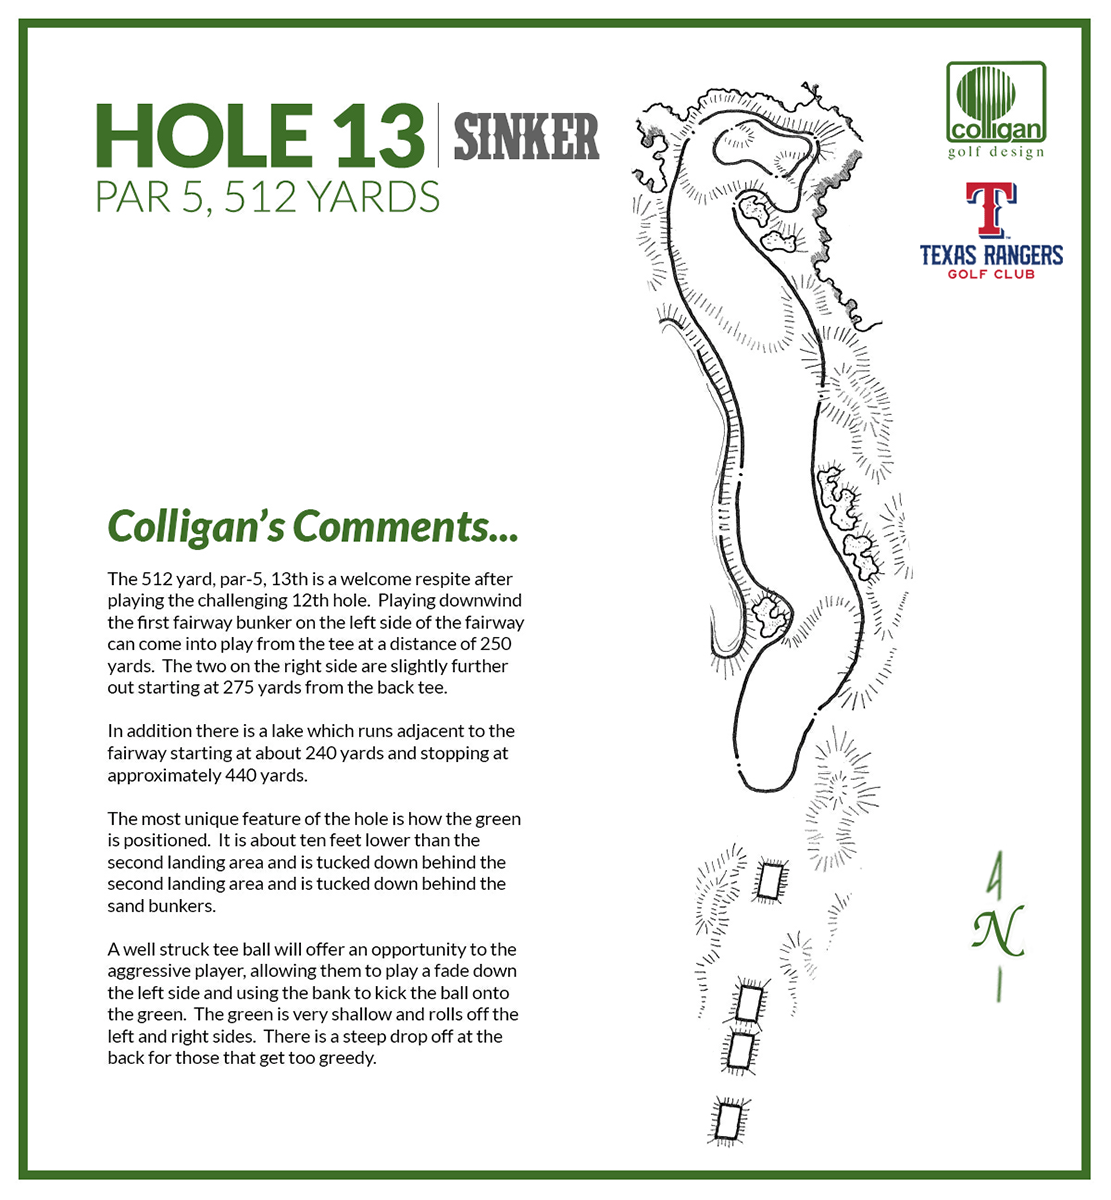 Hole #13